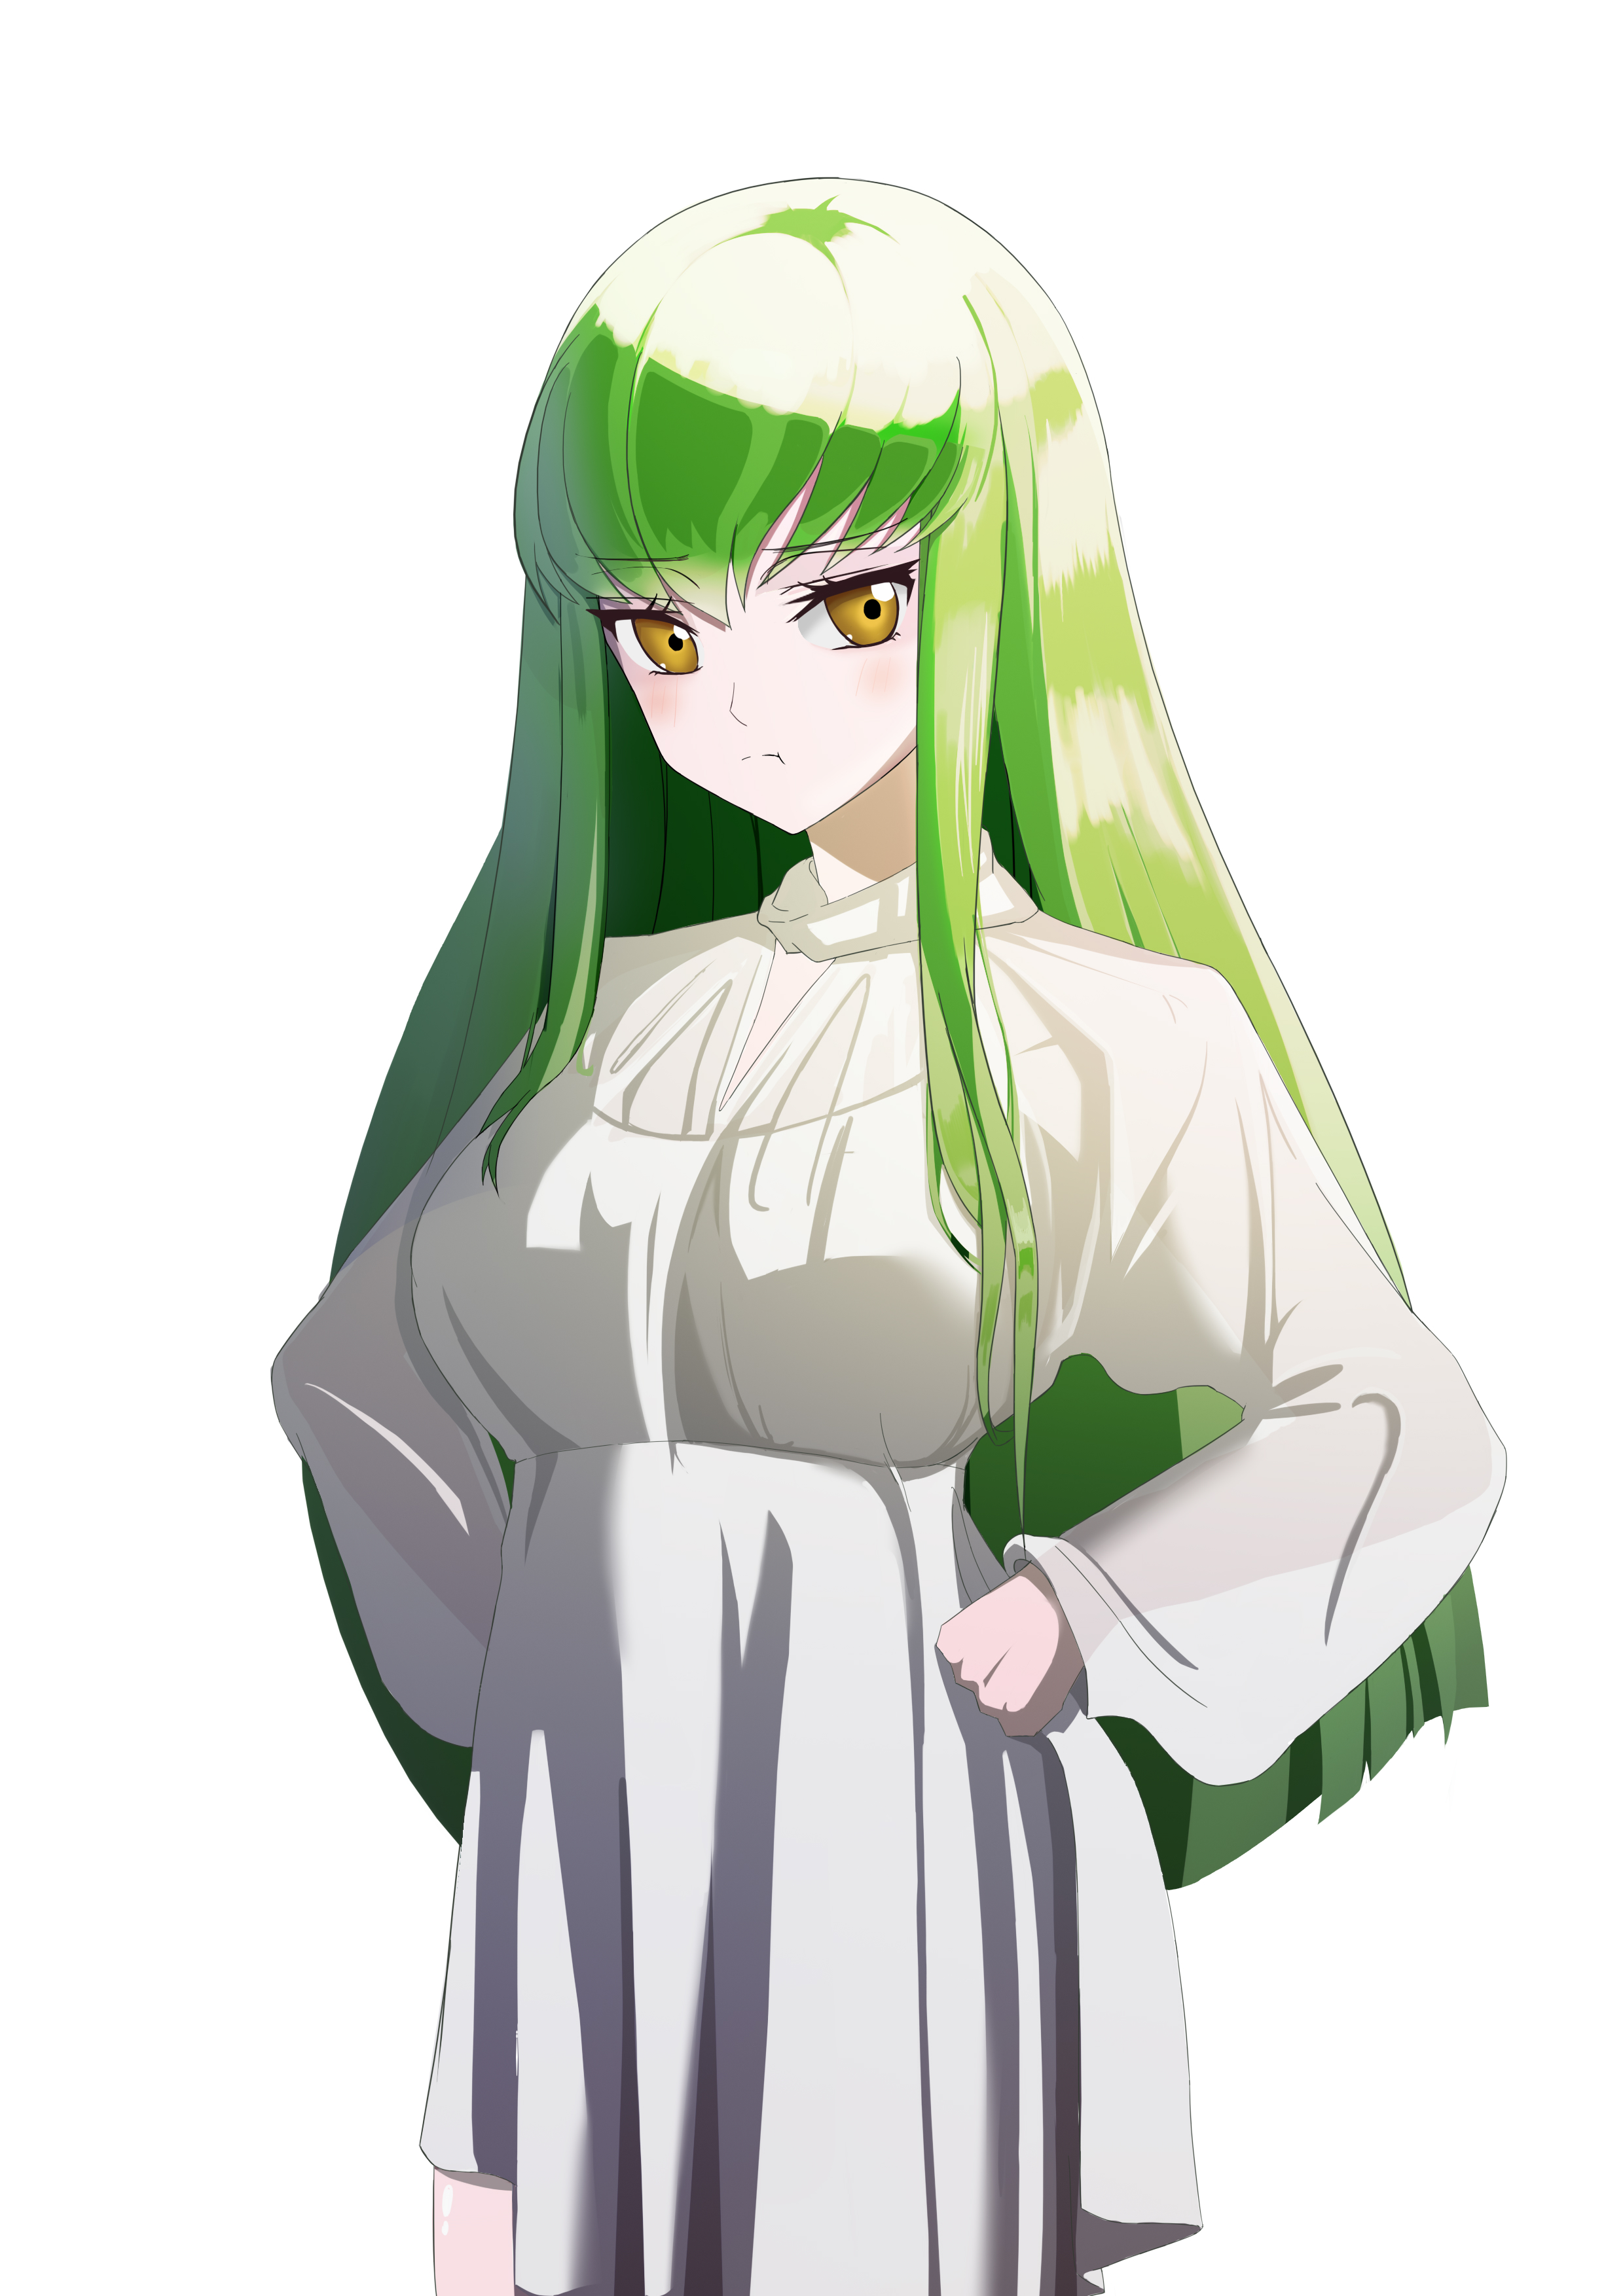 Anime 2479x3508 anime anime girls Code Geass C.C. (Code Geass) long hair green hair artwork digital art fan art